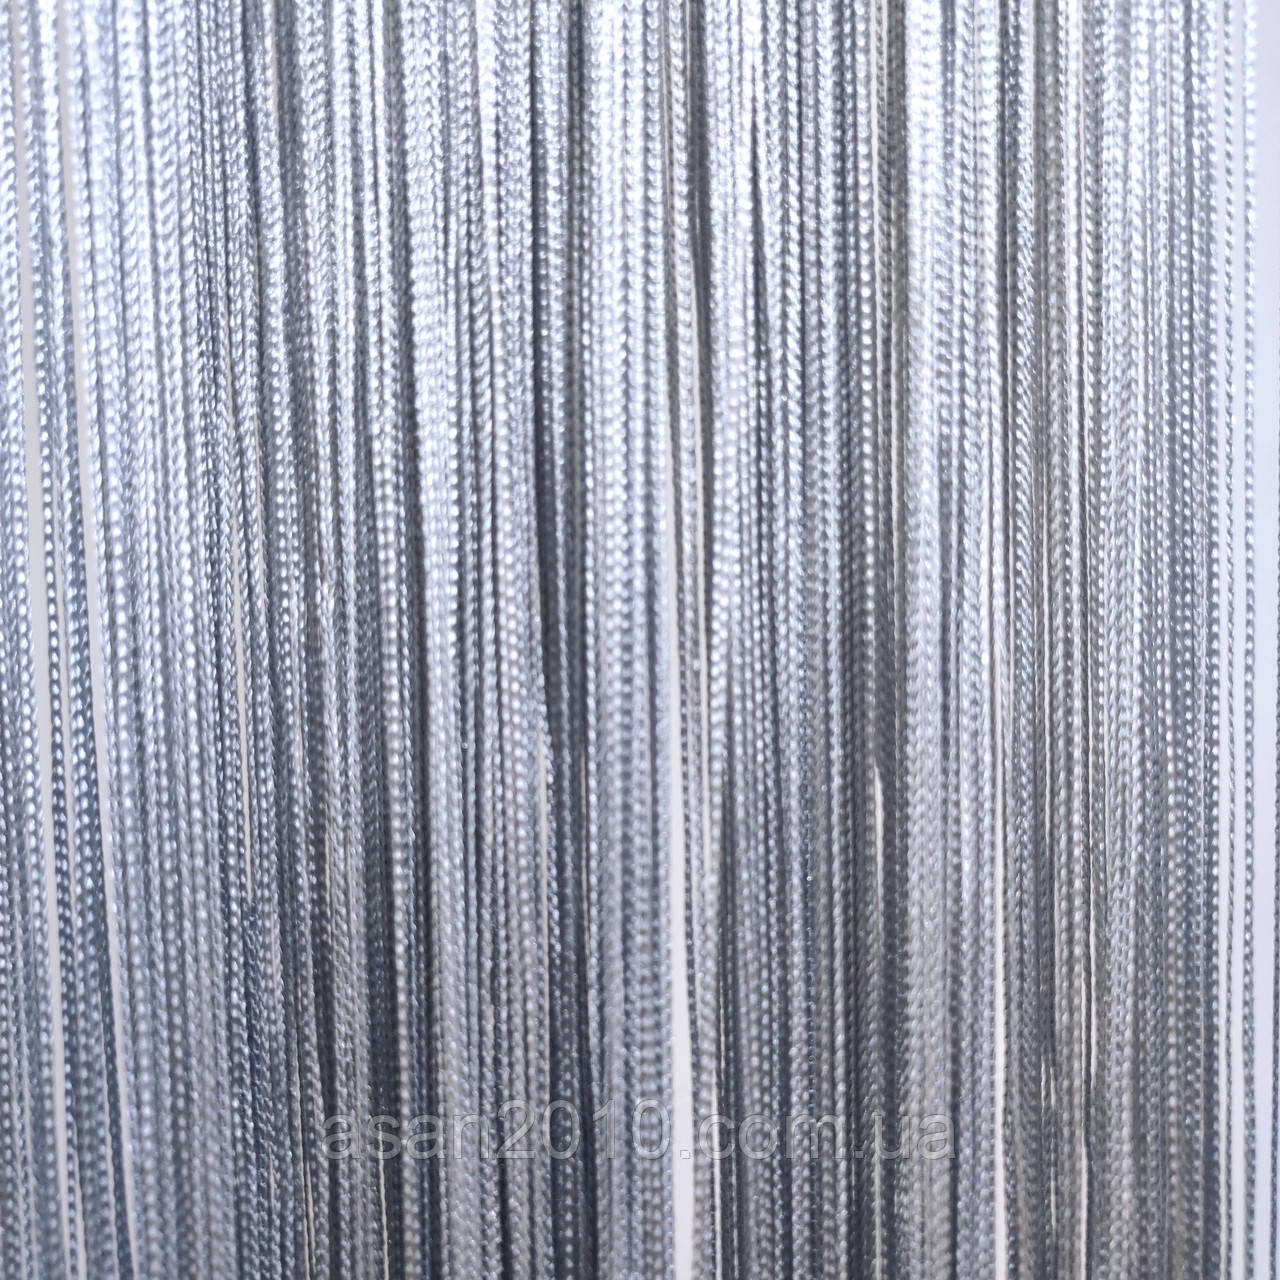 Вышивка бисером - схемы